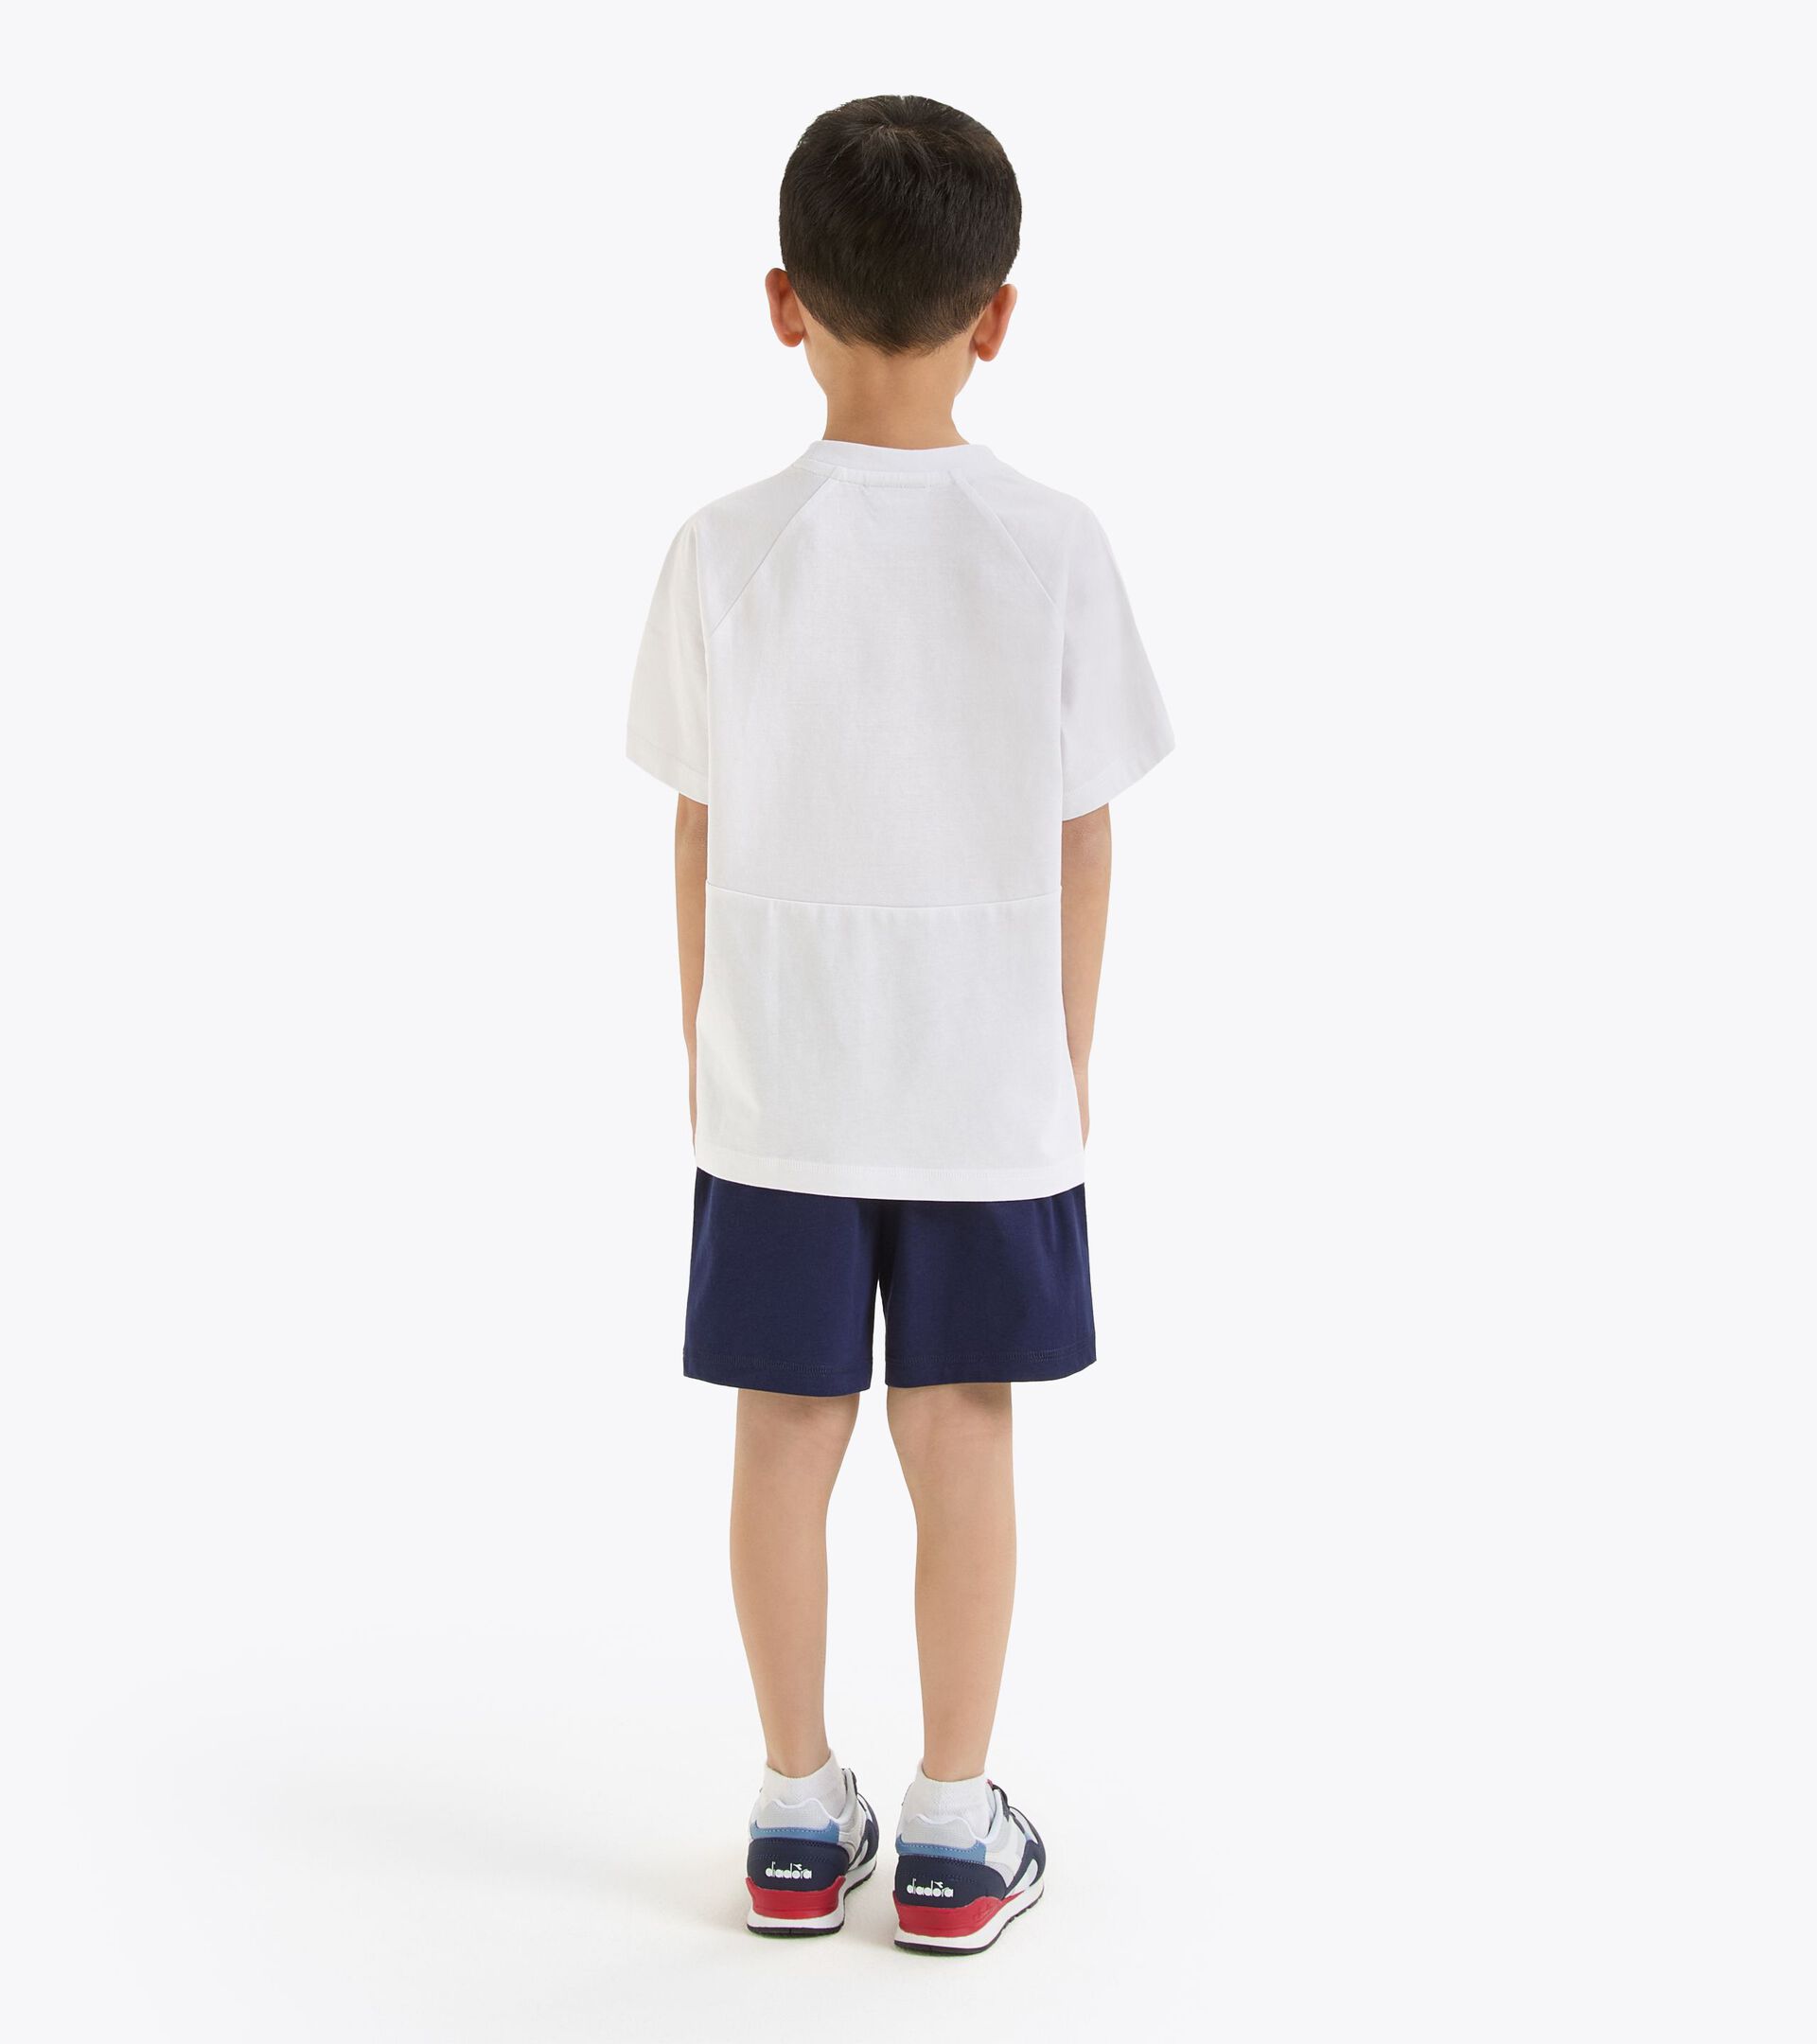 Conjunto deportivo - Camiseta y pantalones cortos - Niños y adolescentes
 JB. SET SS RIDDLE BLANCO VIVO - Diadora